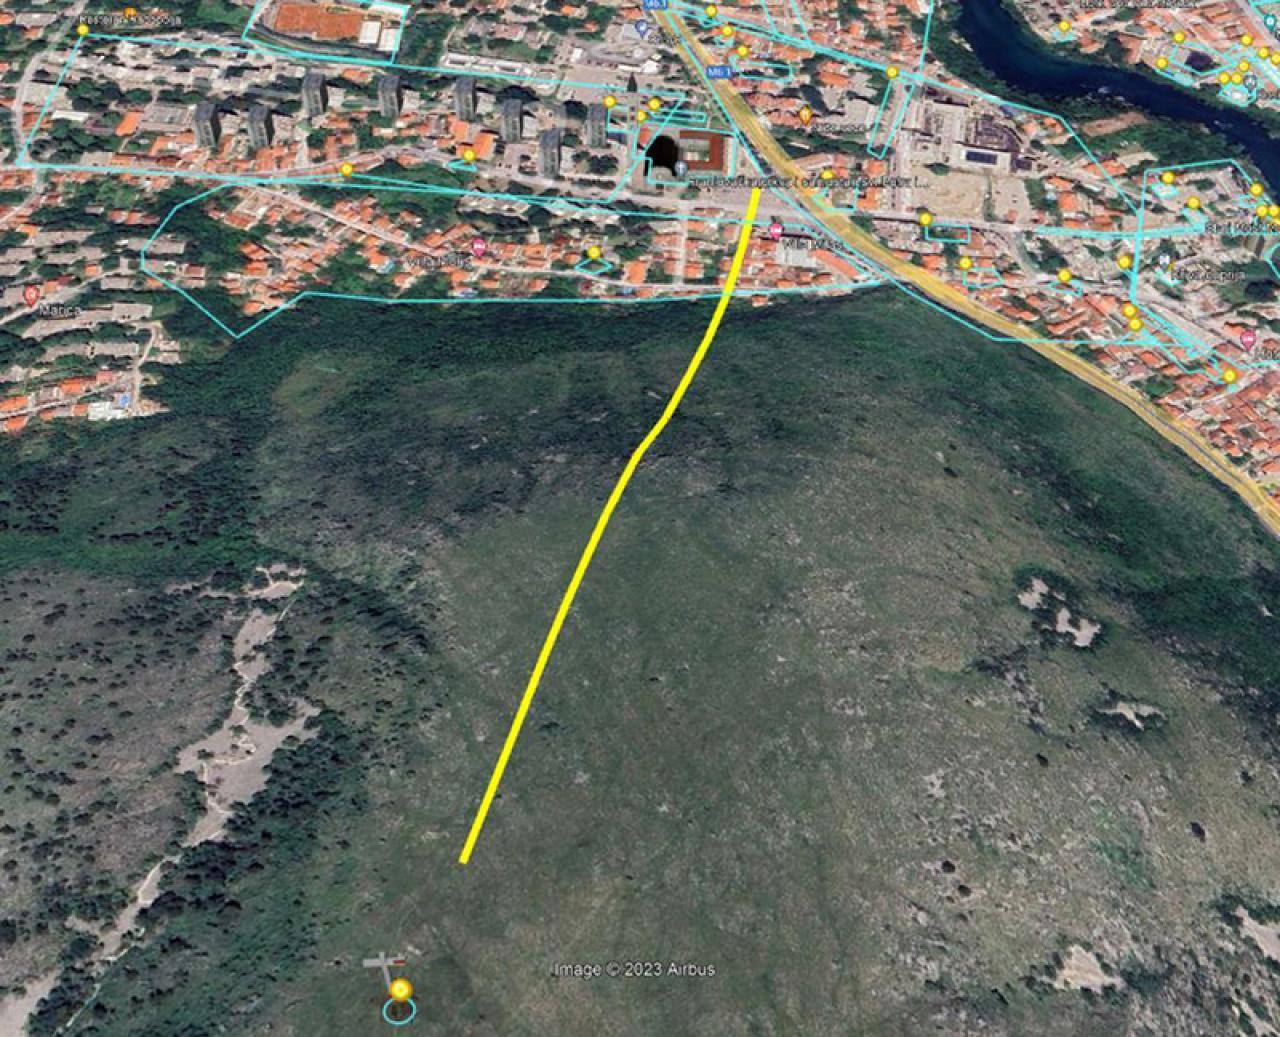 Mapa putanje moguće žučare | Izvor: Grad Mostar - Stigke ponude za mostarsku žičaru